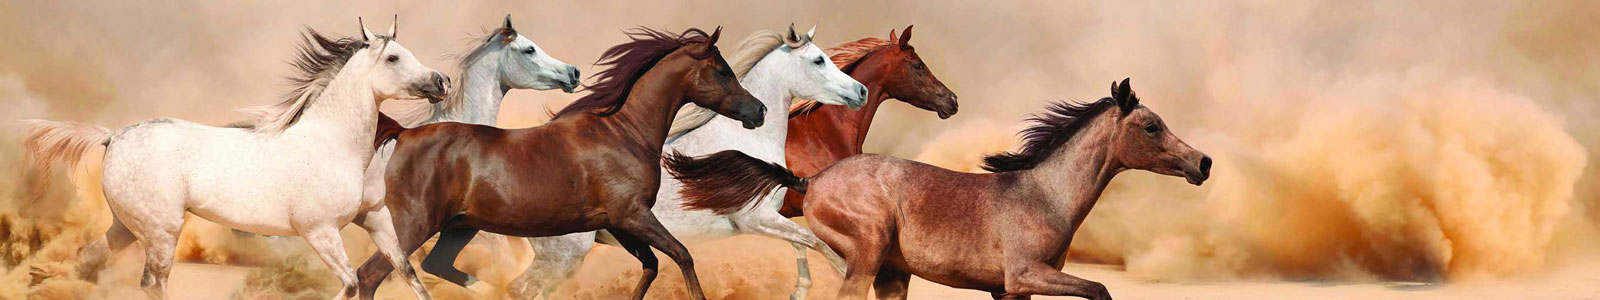 №3305 - Галоп арабских лошадей в песчаной буре